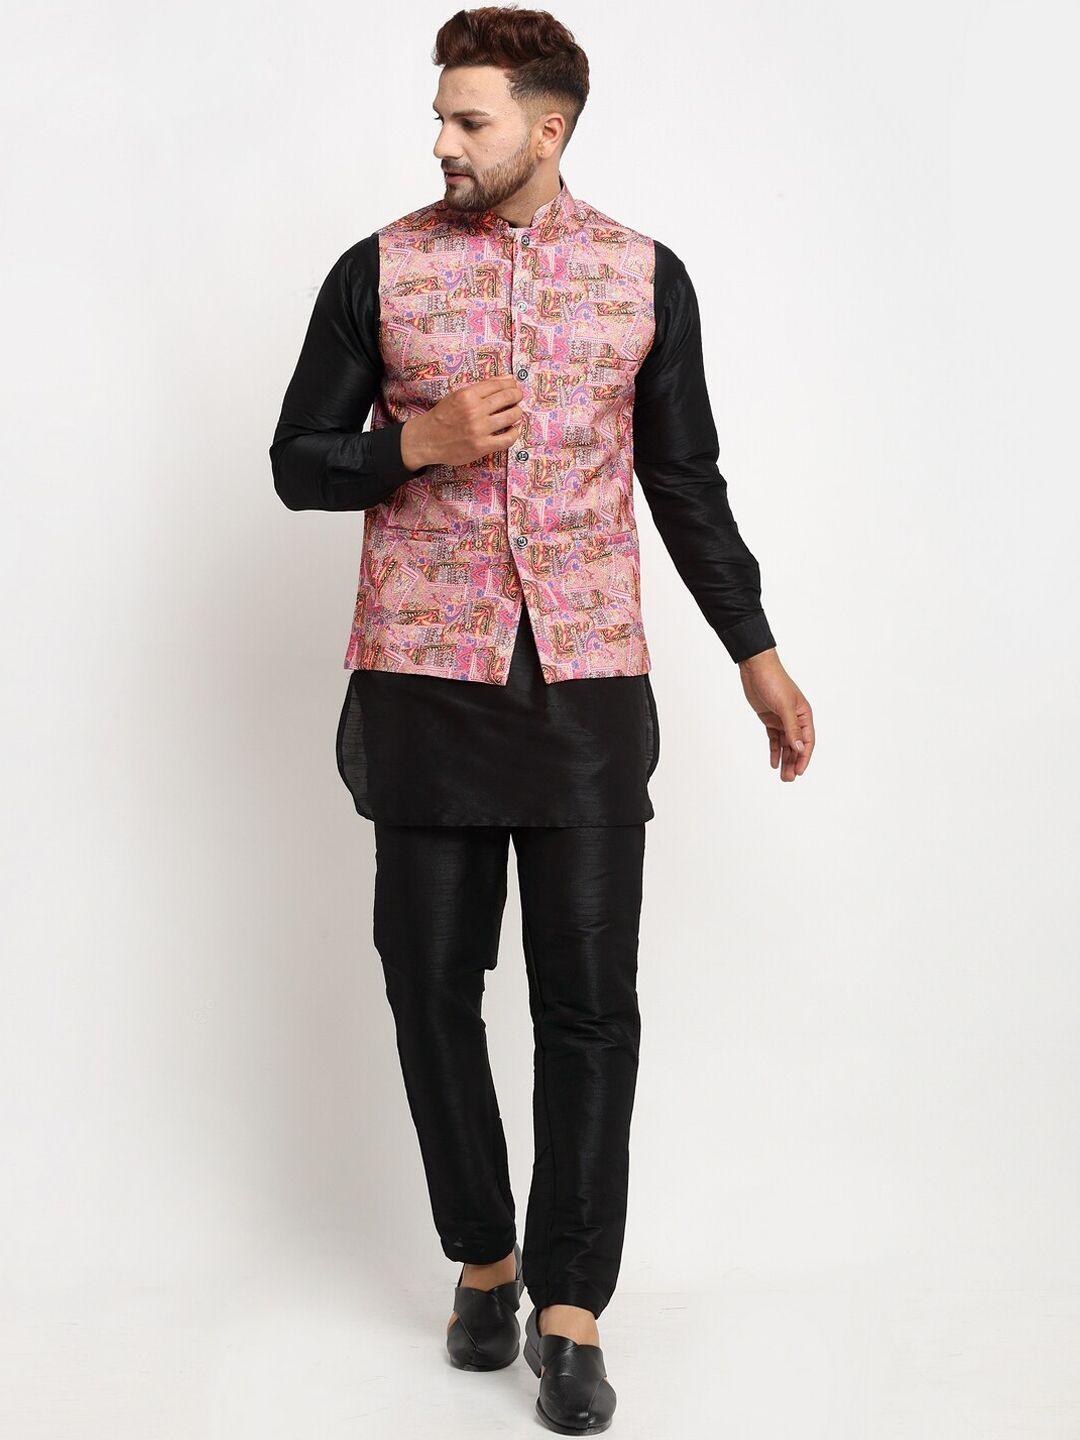 benstoke men black kurta set pink printed nehru jacket